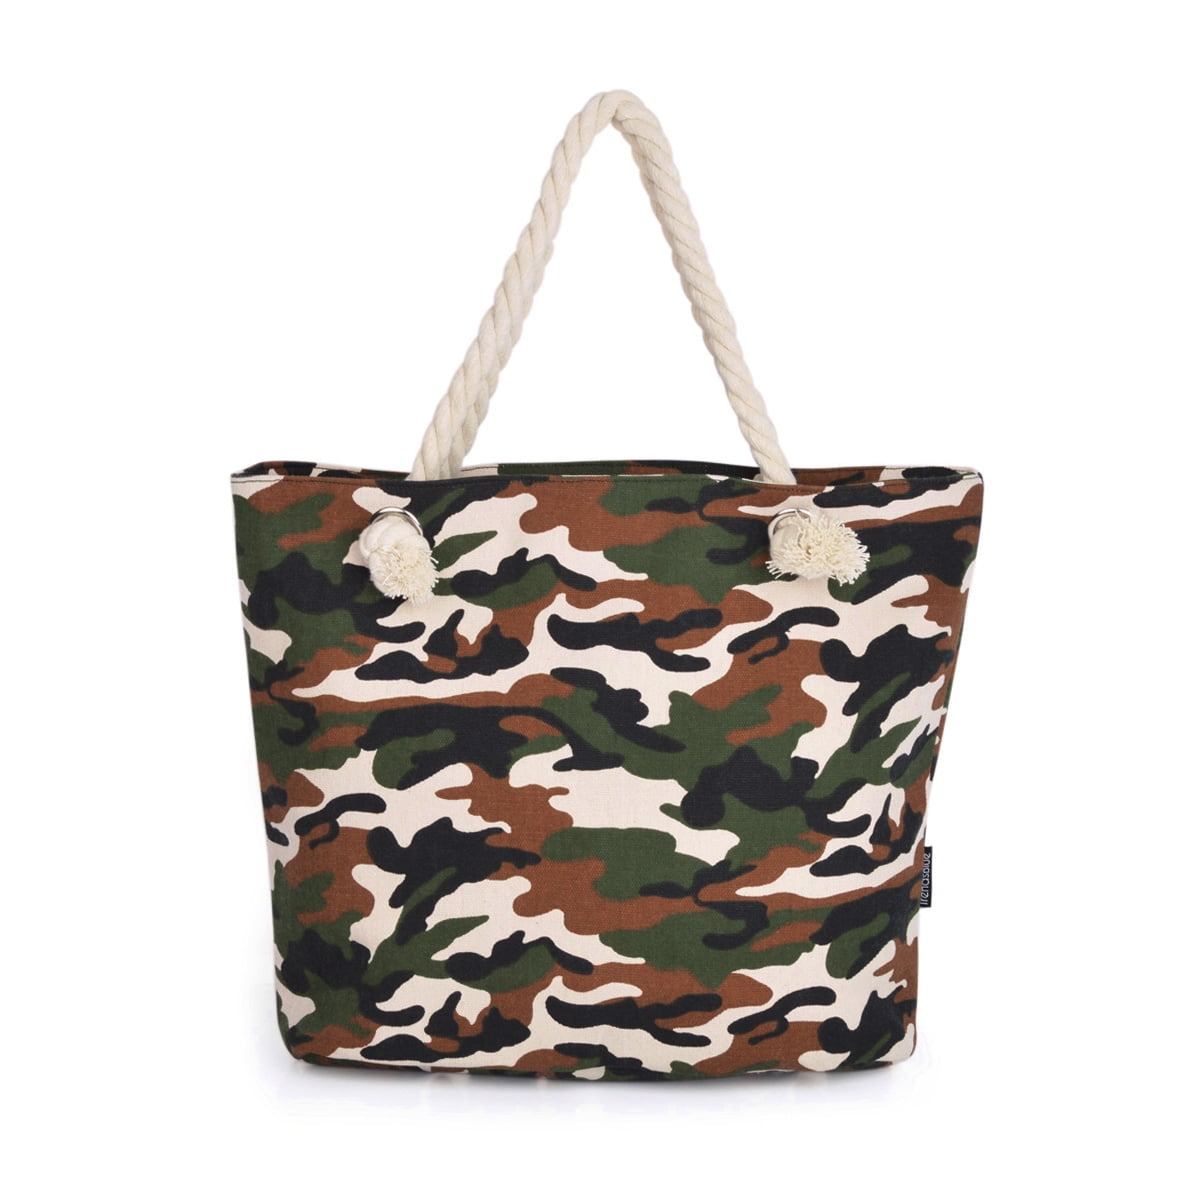 At passe glemme sporadisk Premium Camouflage Canvas Tote Shoulder Bag Handbag - Walmart.com